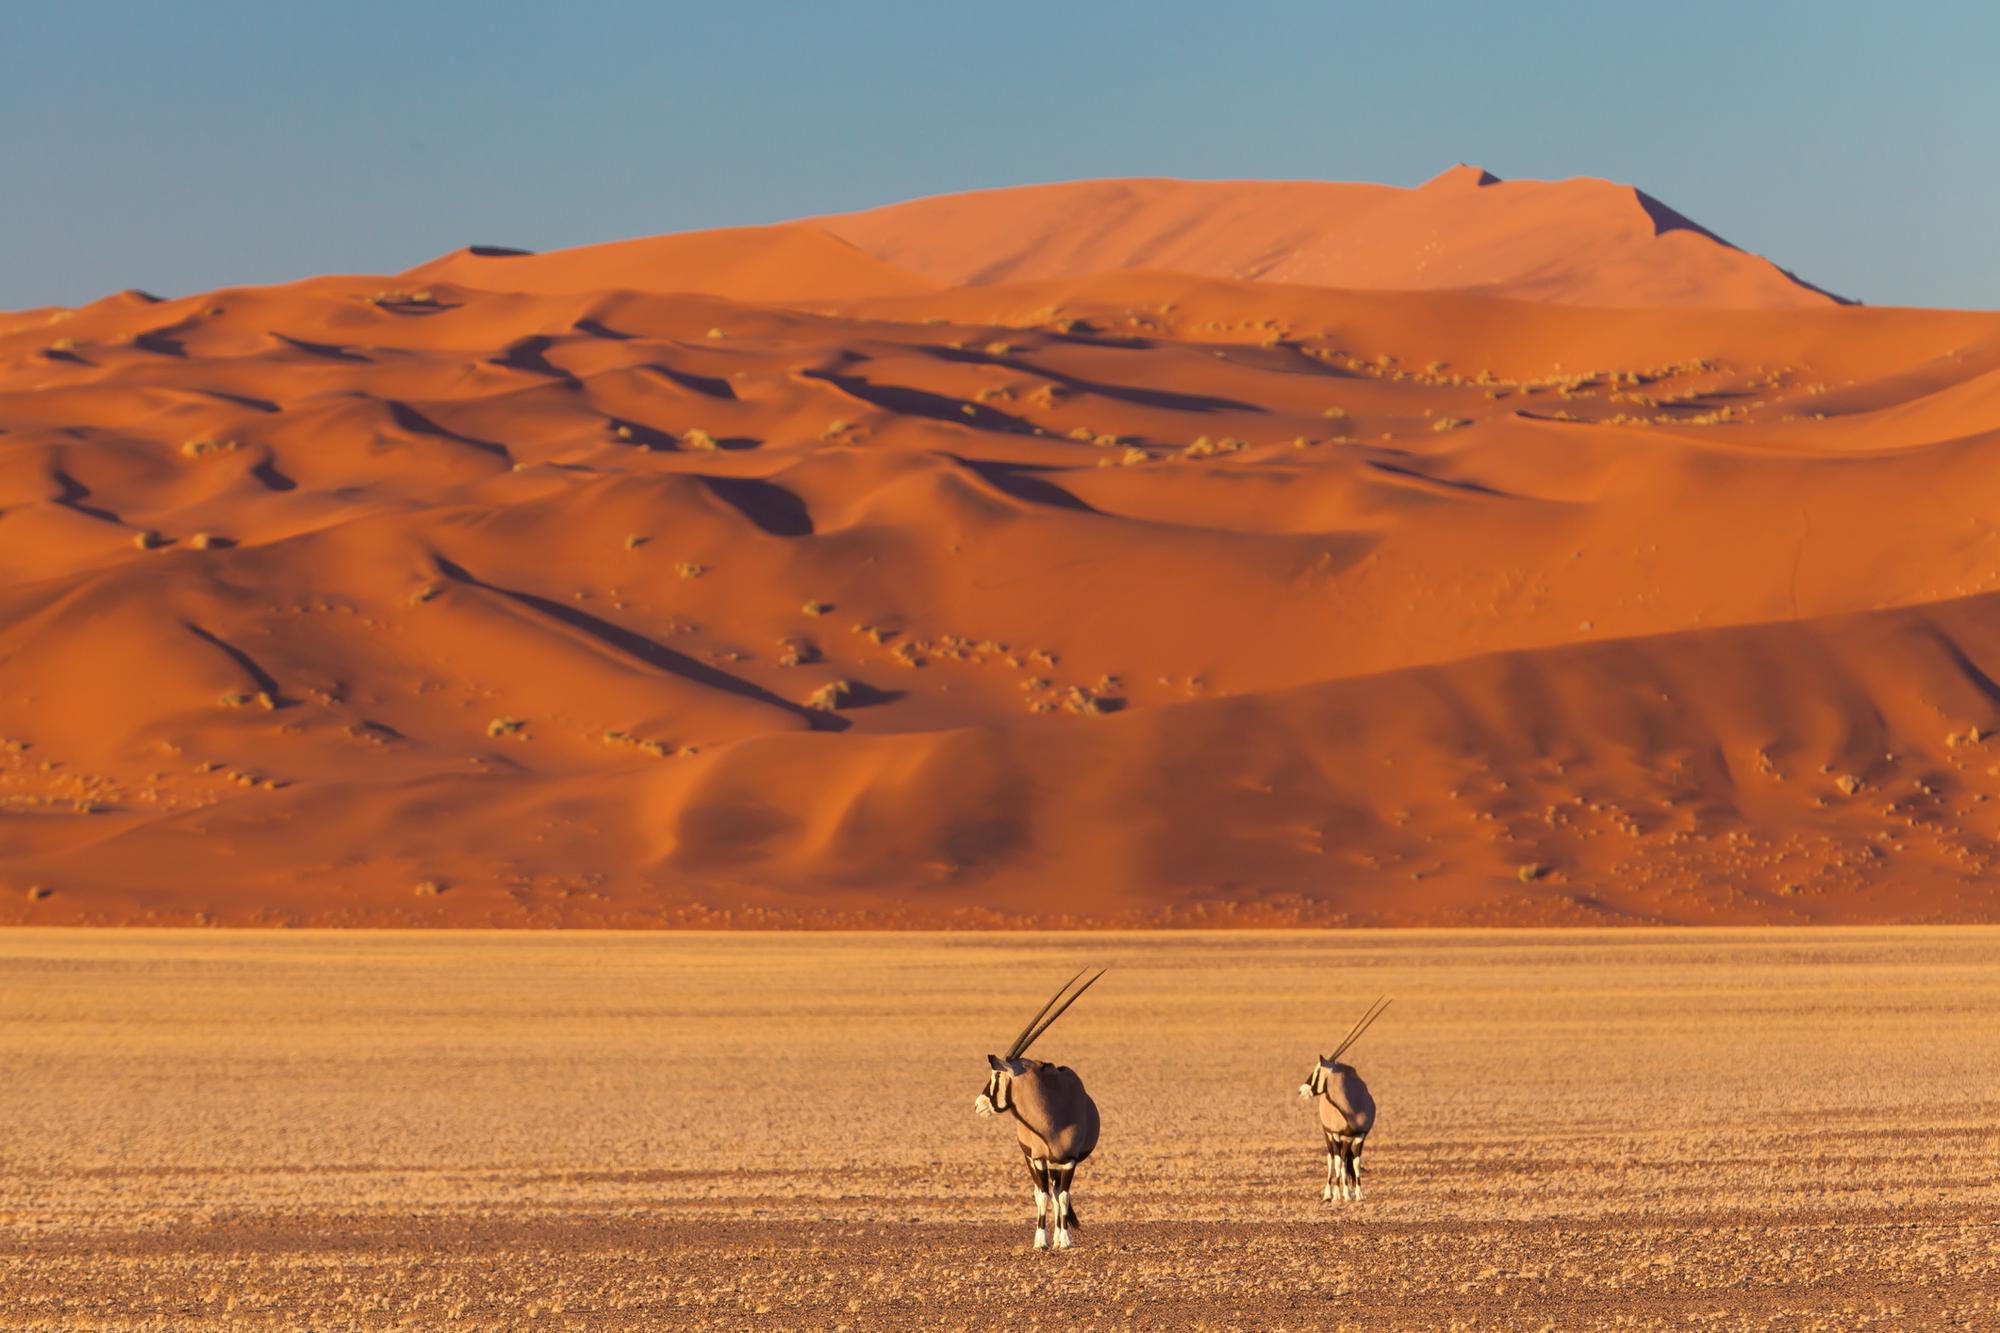 Odhadovaný vek púšte je 55 miliónov rokov.